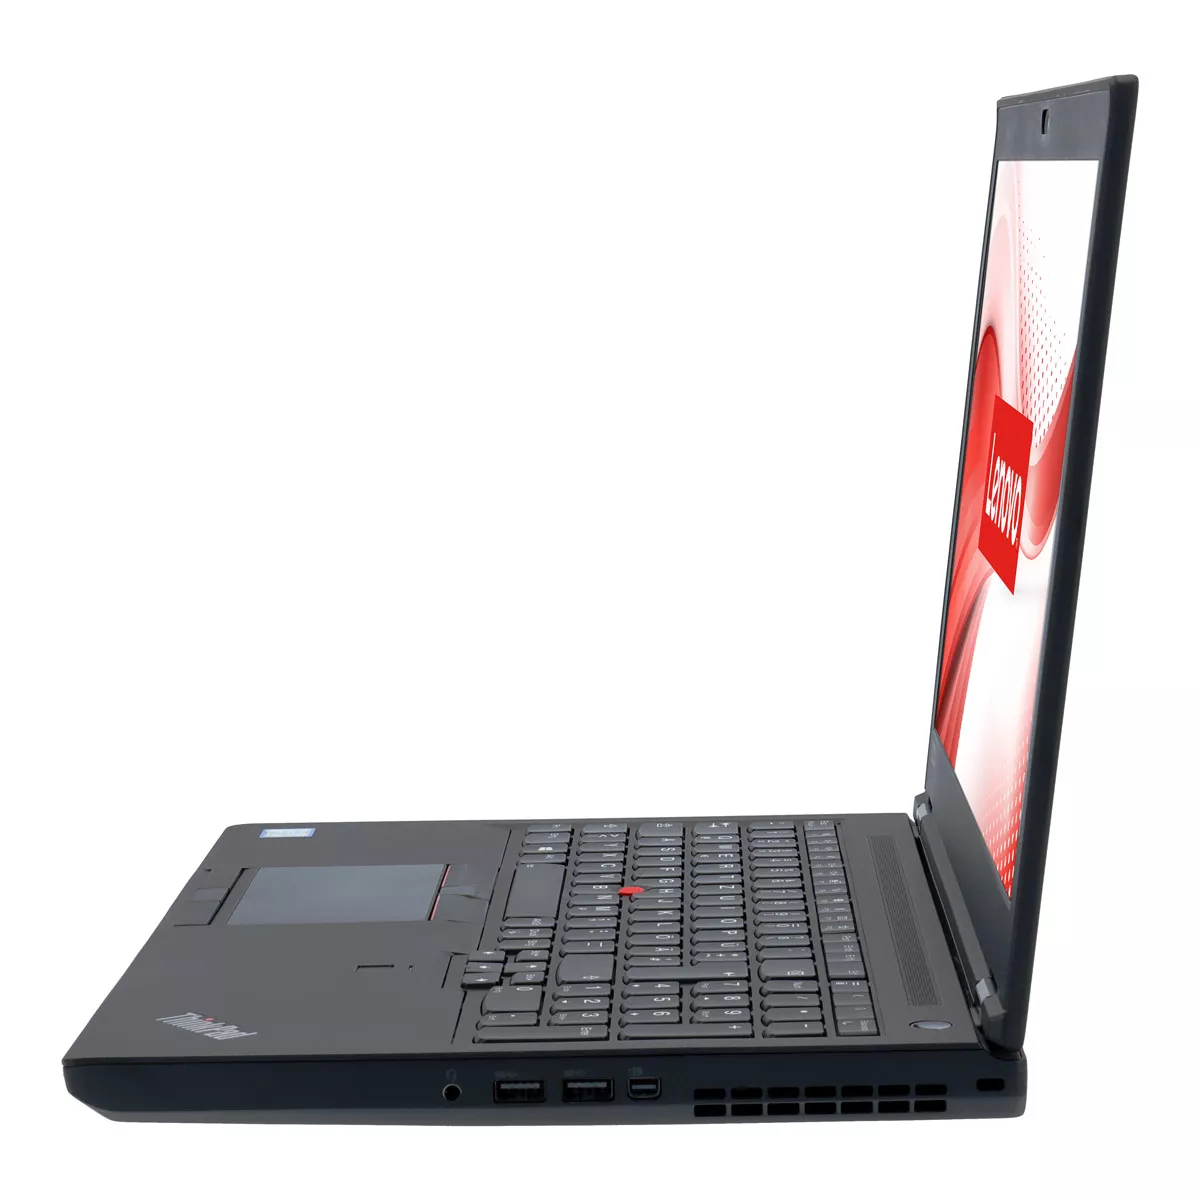 Lenovo ThinkPad P52 Core i7 8750H nVidia Quadro P1000M 32 GB 1 TB M.2 SSD Webcam A